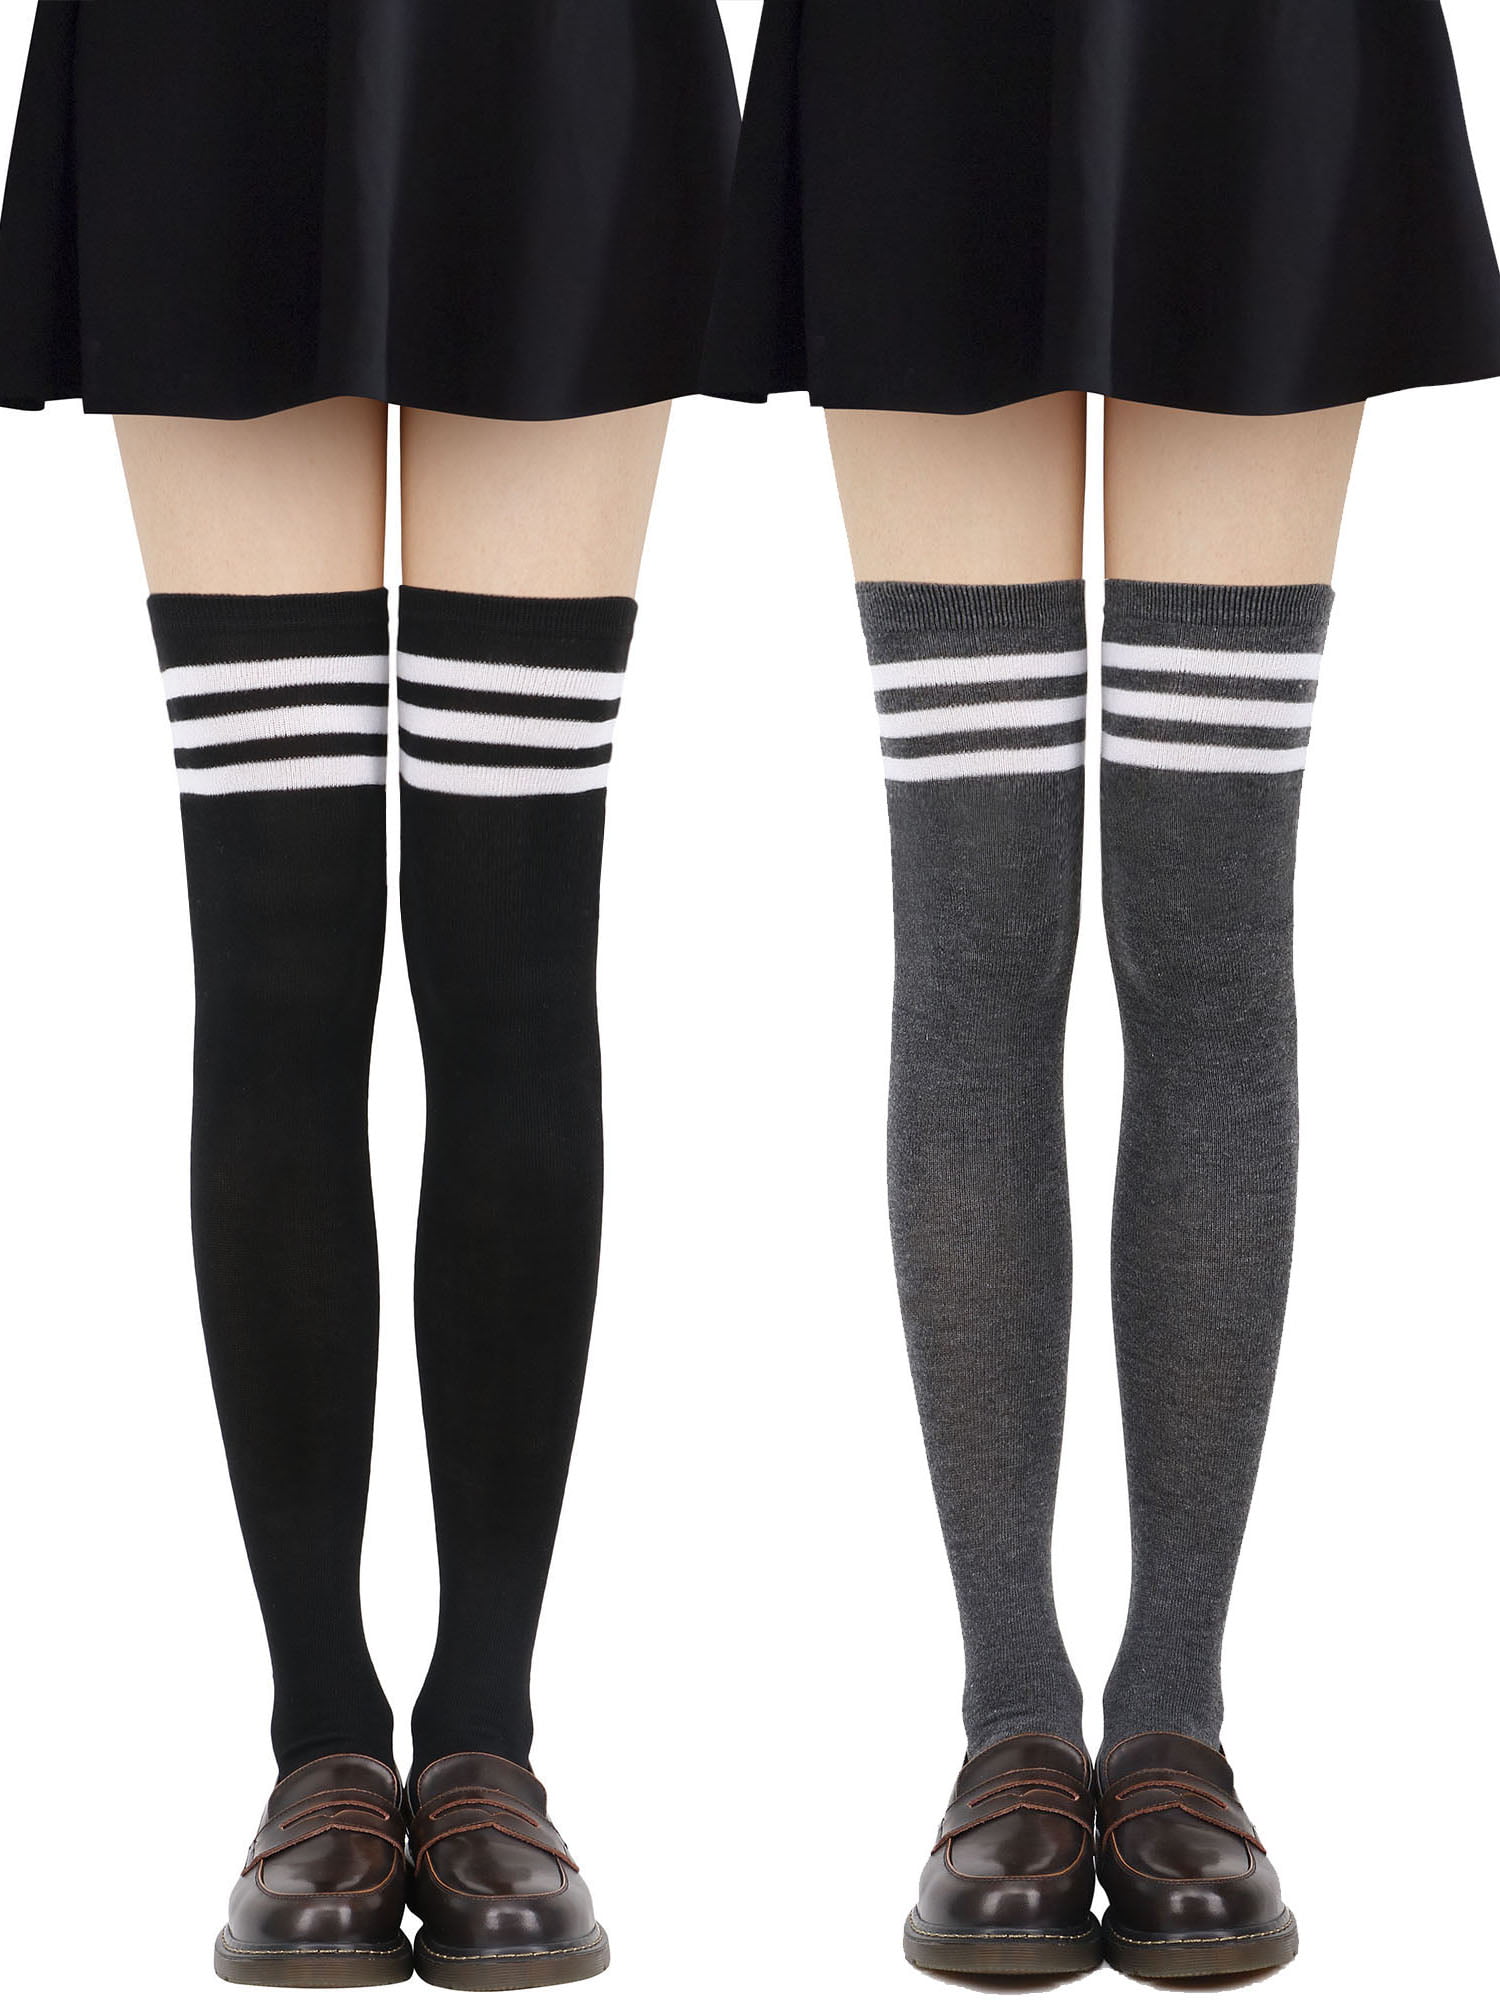 Tube Socks Women's Retro Striped Trim Long Knee High Socks Stockings,BK ...